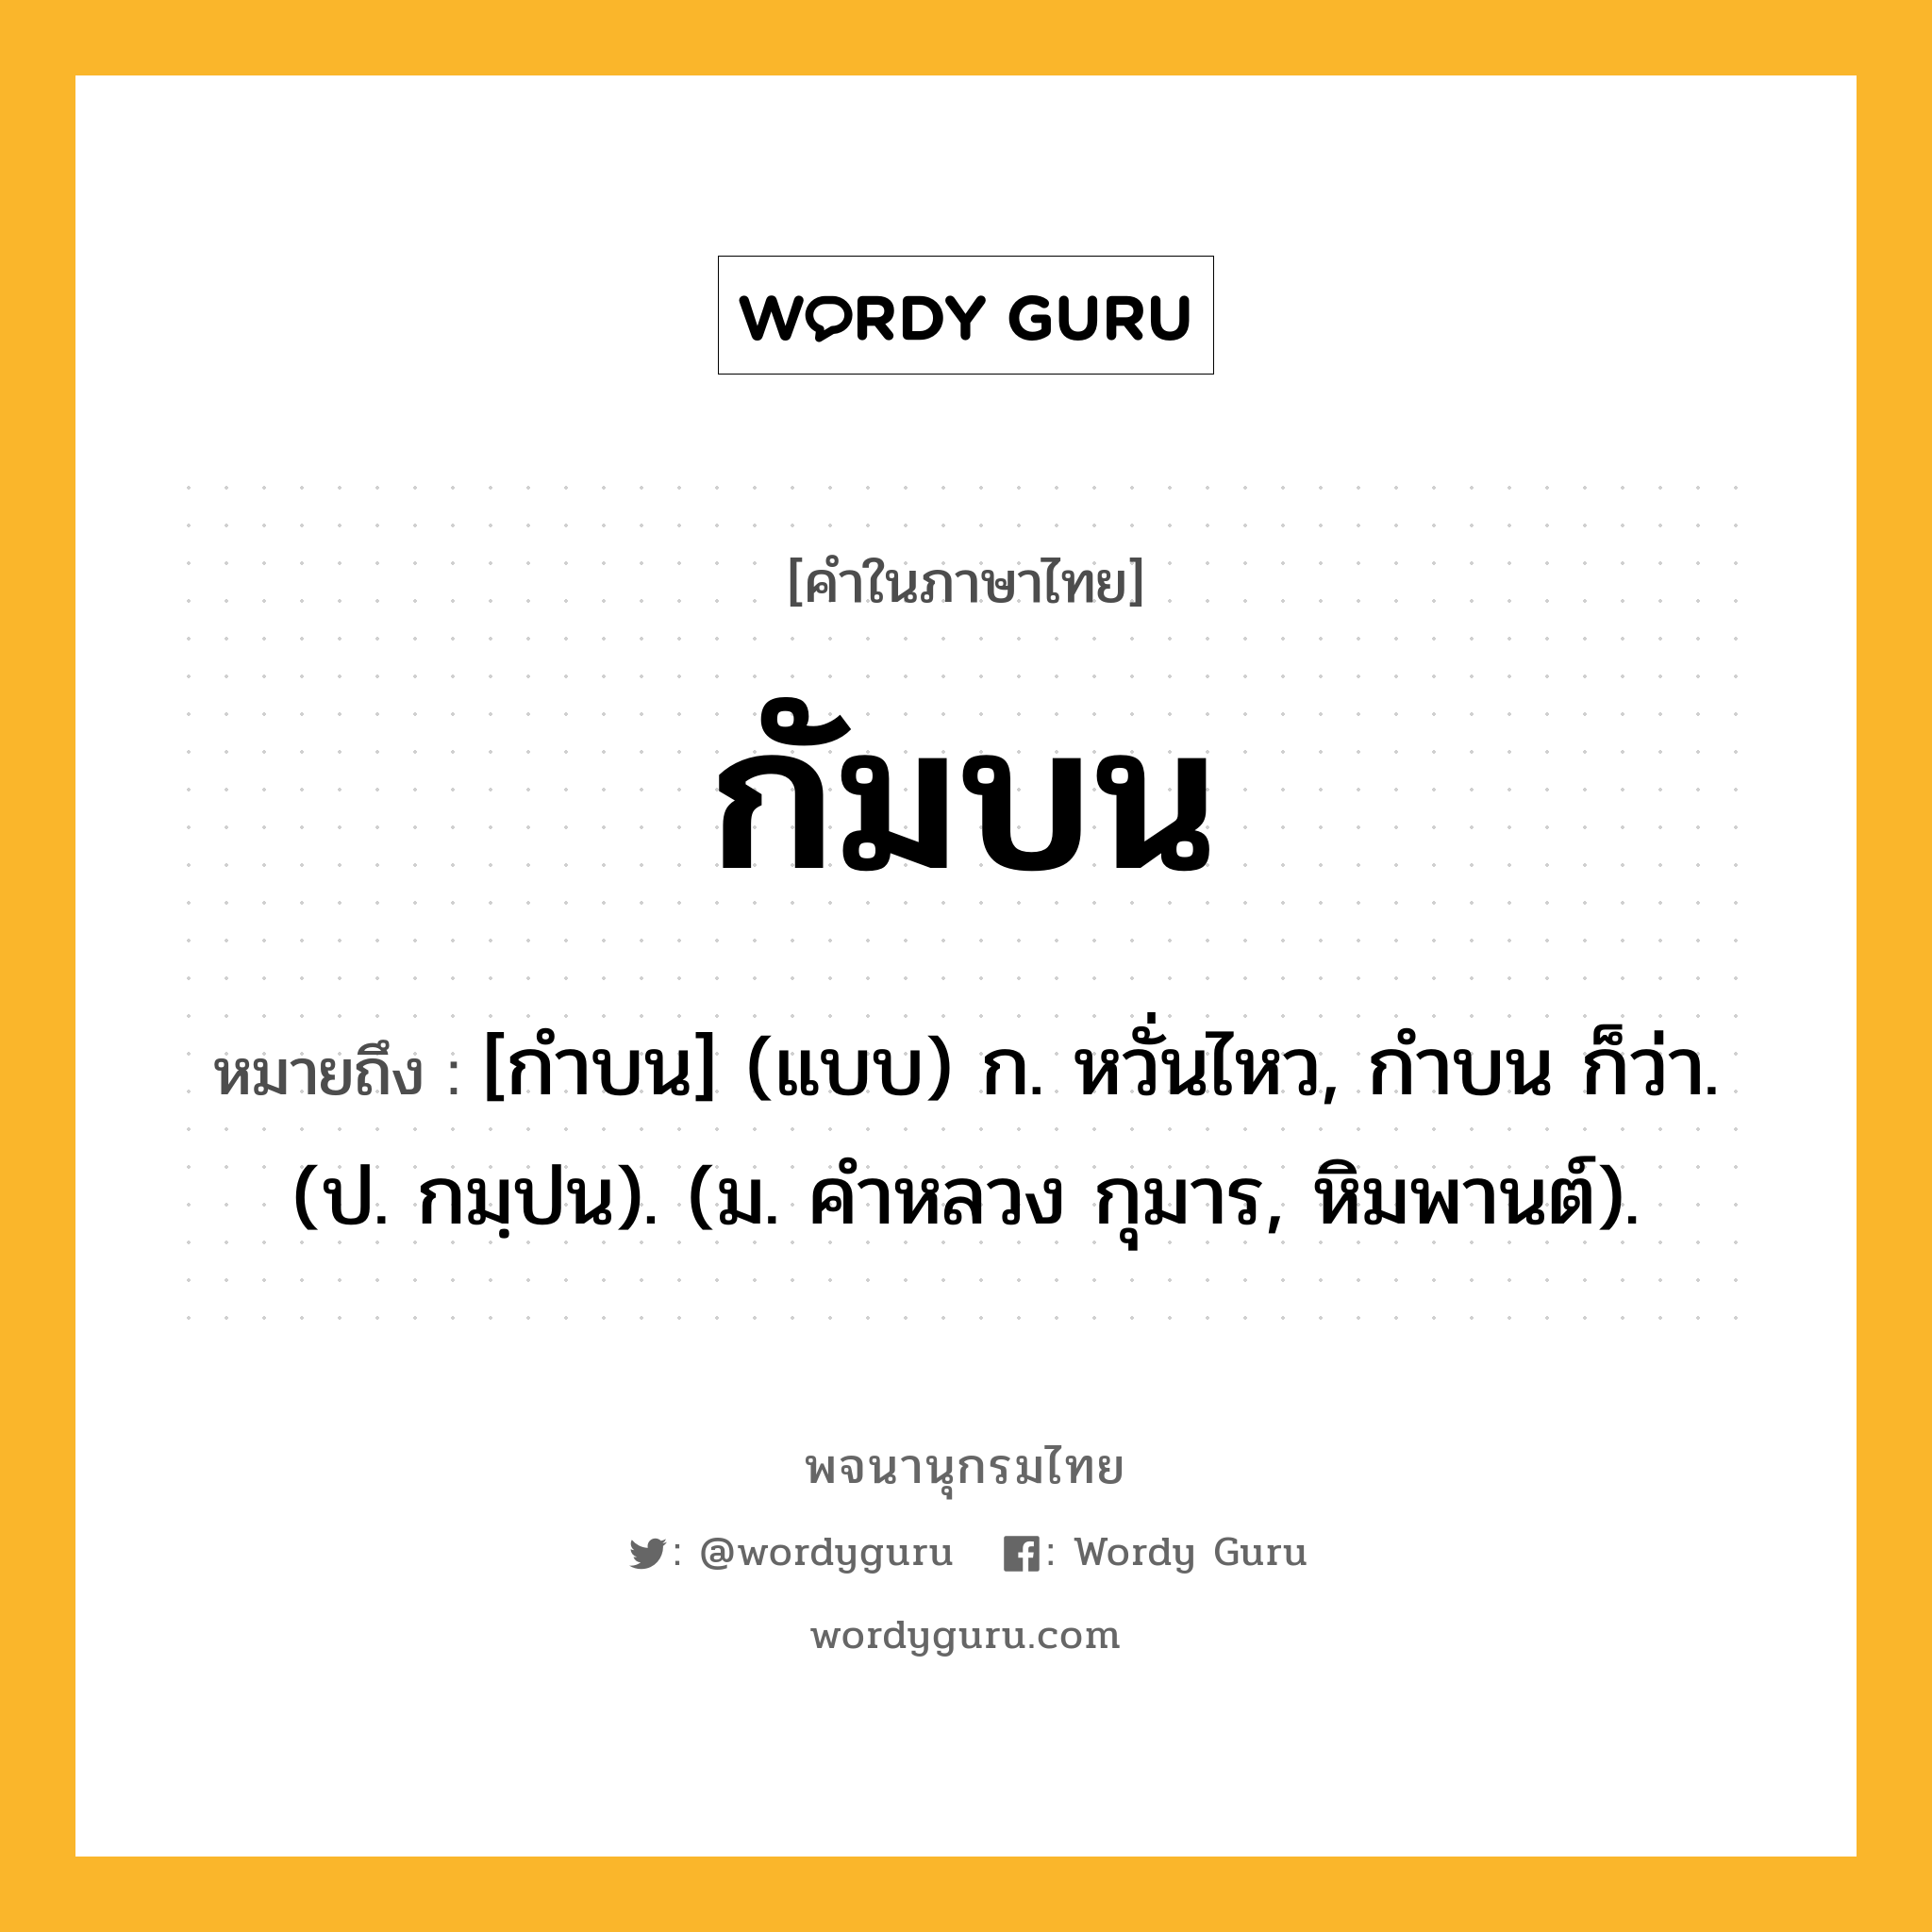 กัมบน หมายถึงอะไร?, คำในภาษาไทย กัมบน หมายถึง [กําบน] (แบบ) ก. หวั่นไหว, กําบน ก็ว่า. (ป. กมฺปน). (ม. คําหลวง กุมาร, หิมพานต์).